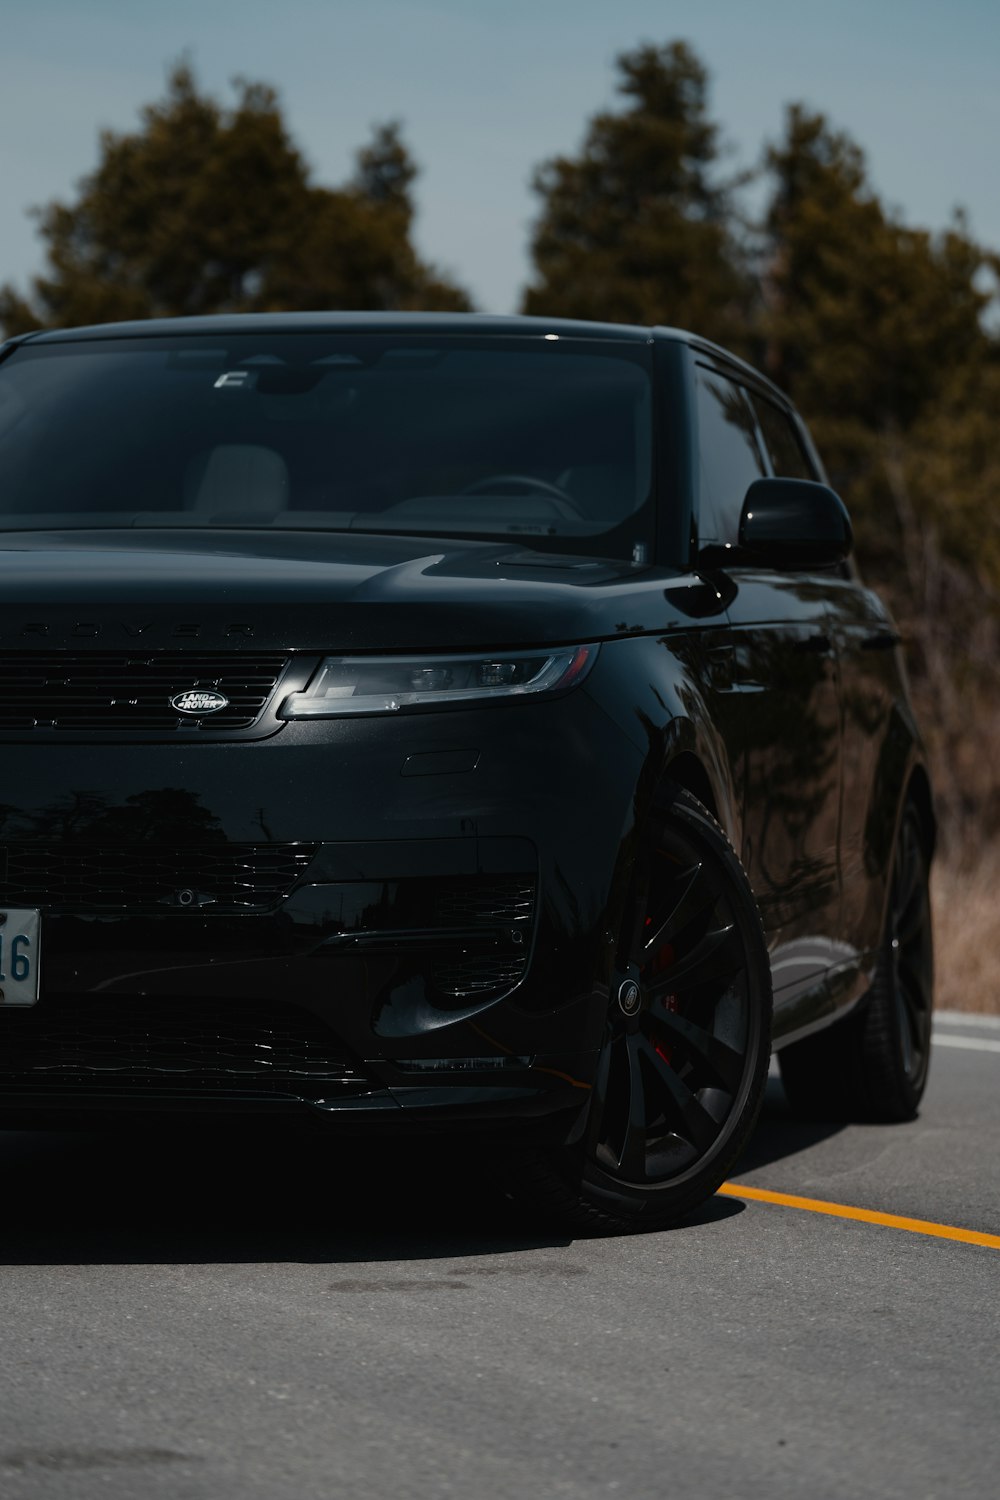 Ein schwarzer Range Rover, der am Straßenrand geparkt ist